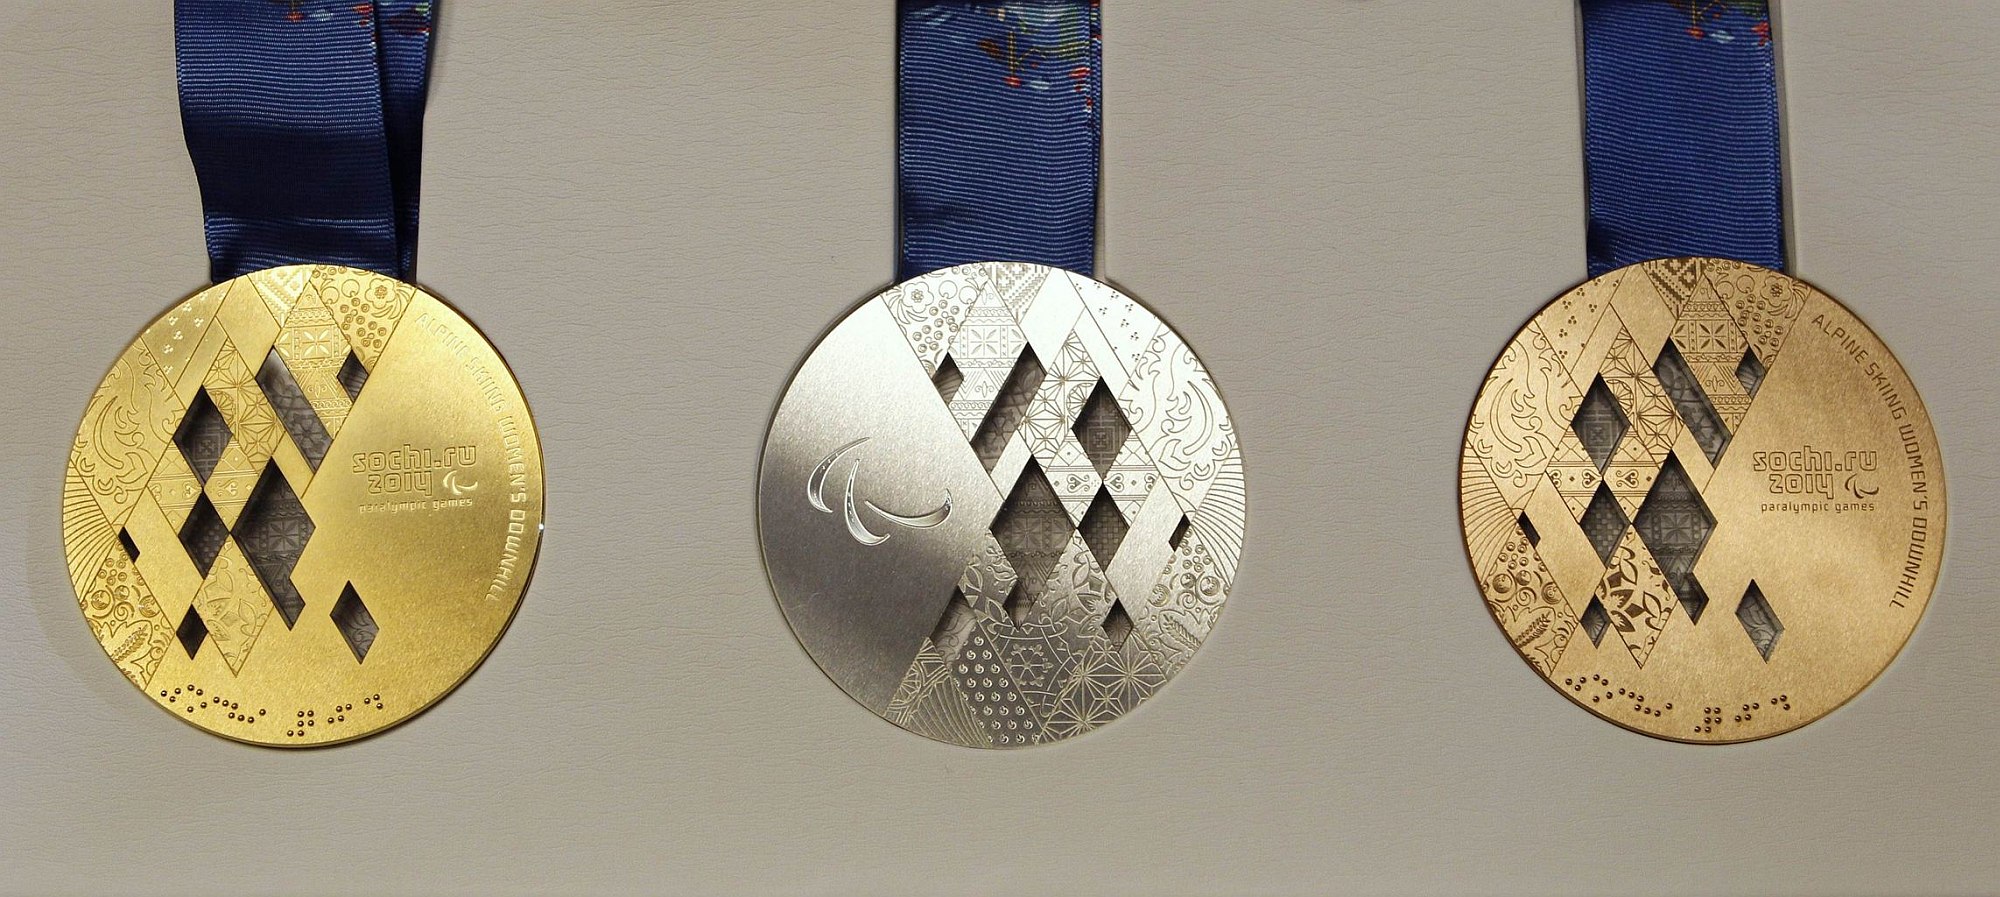 Олимпийская медаль 2014 года. Медаль Паралимпийских игр Сочи. Олимпийские игры в Сочи 2014 медали. Паралимпийские игры Сочи 2014 медали. Медаль Паралимпийских игр в Сочи-2014.